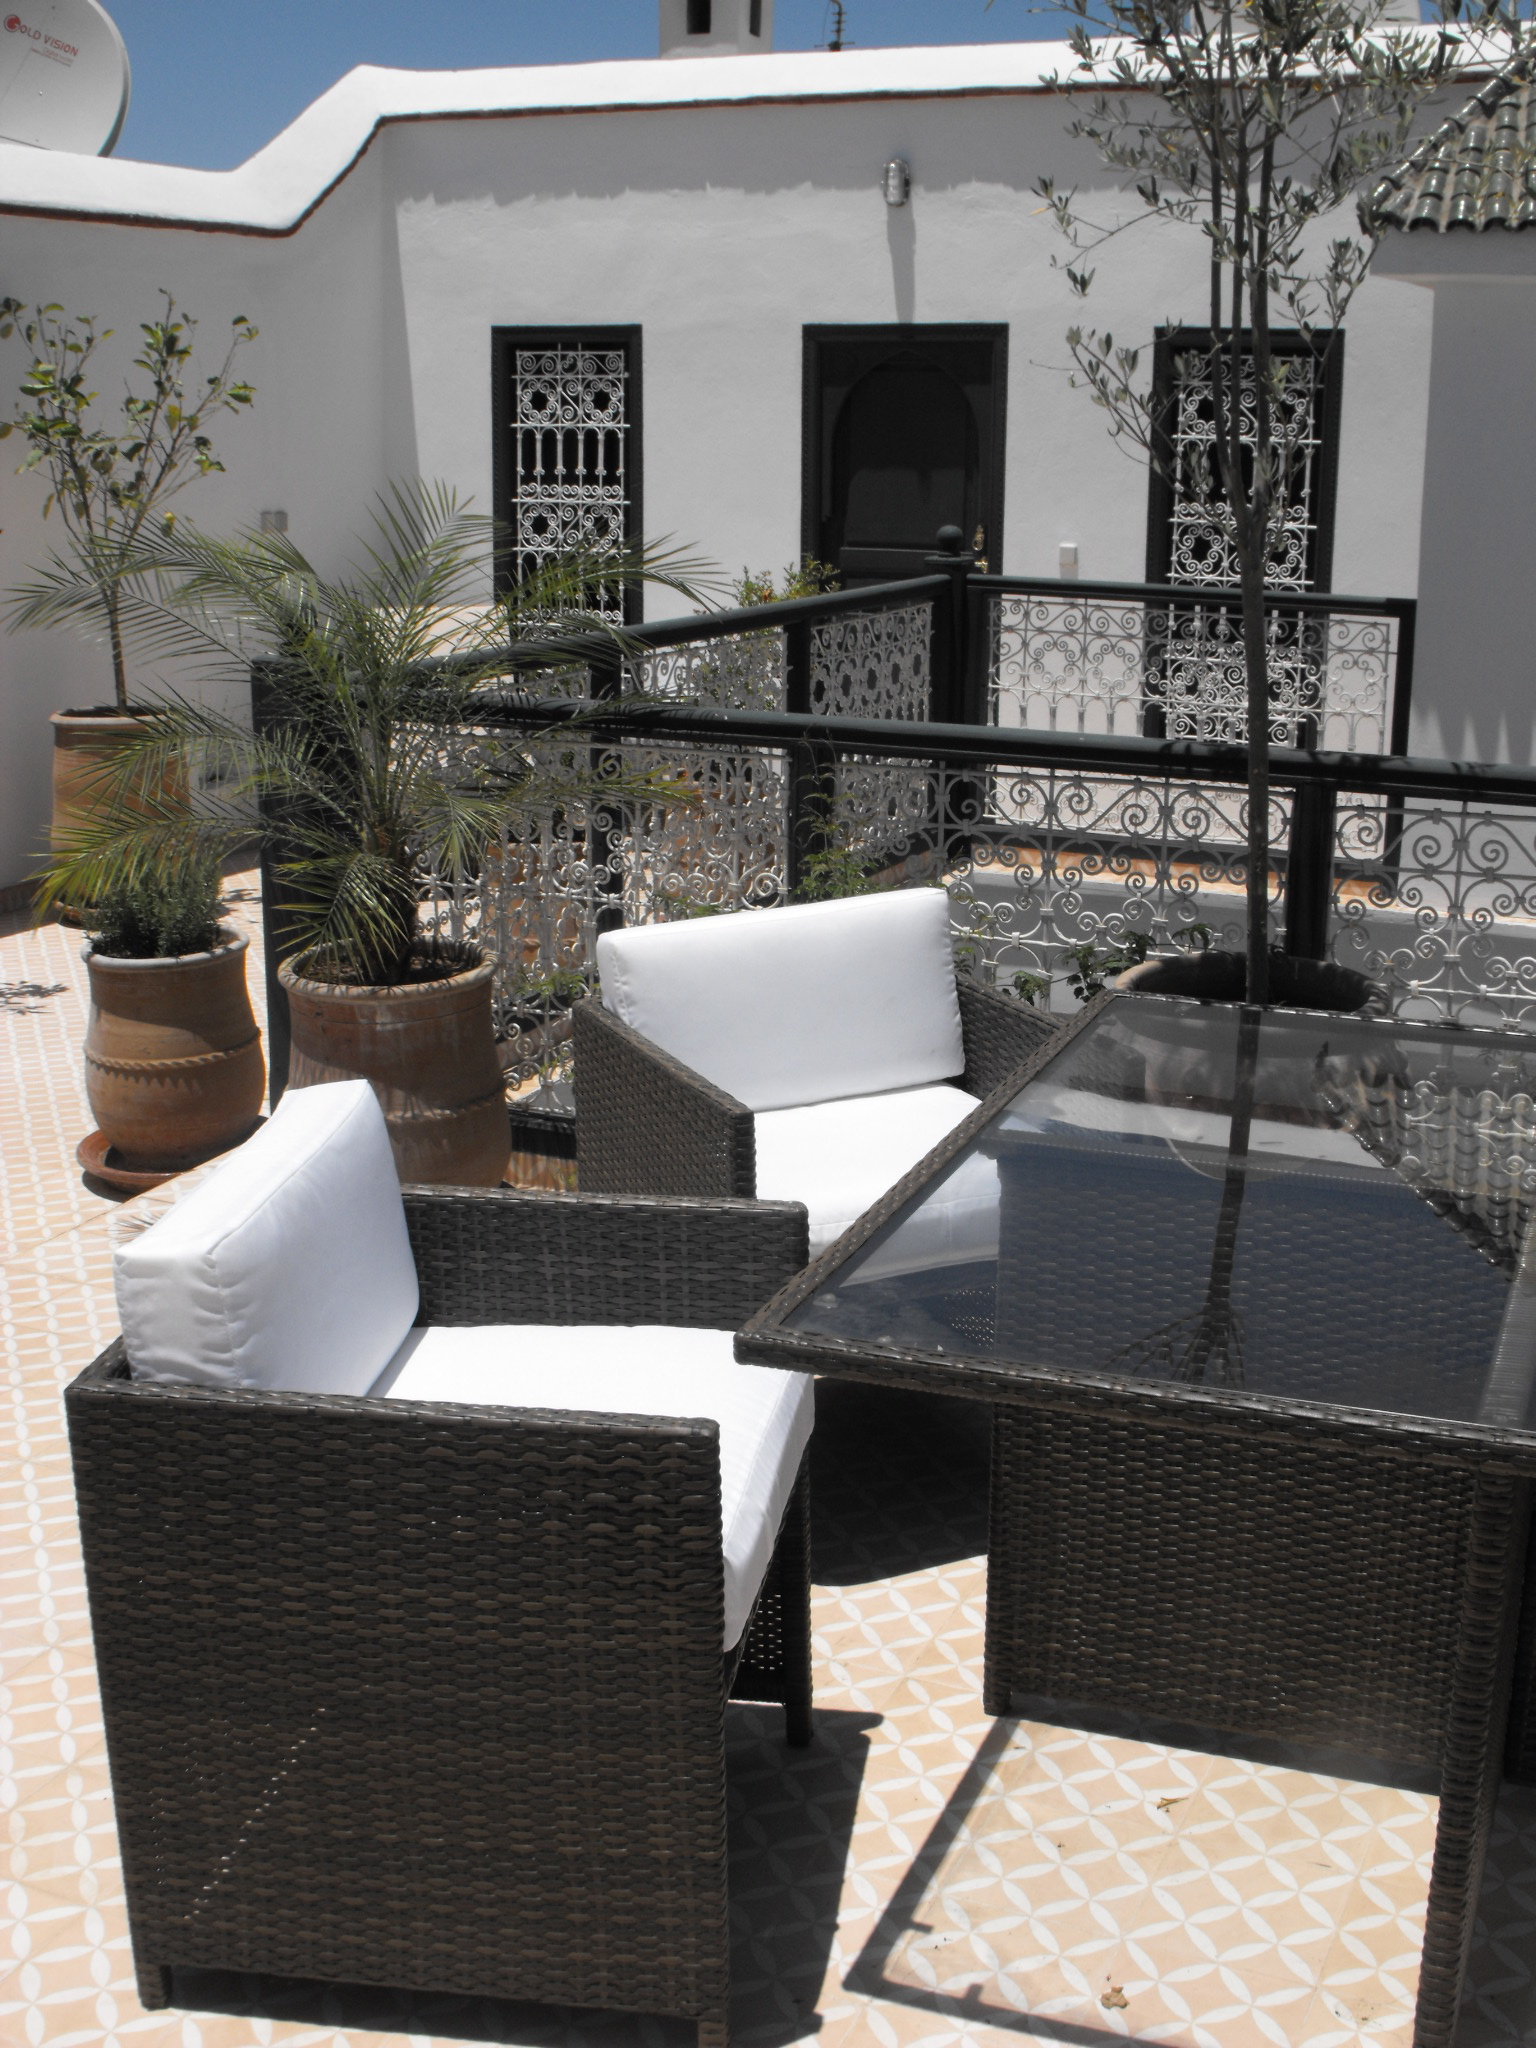 Ferienhaus-Terrasse mit gemütlichen Sitzmöbeln